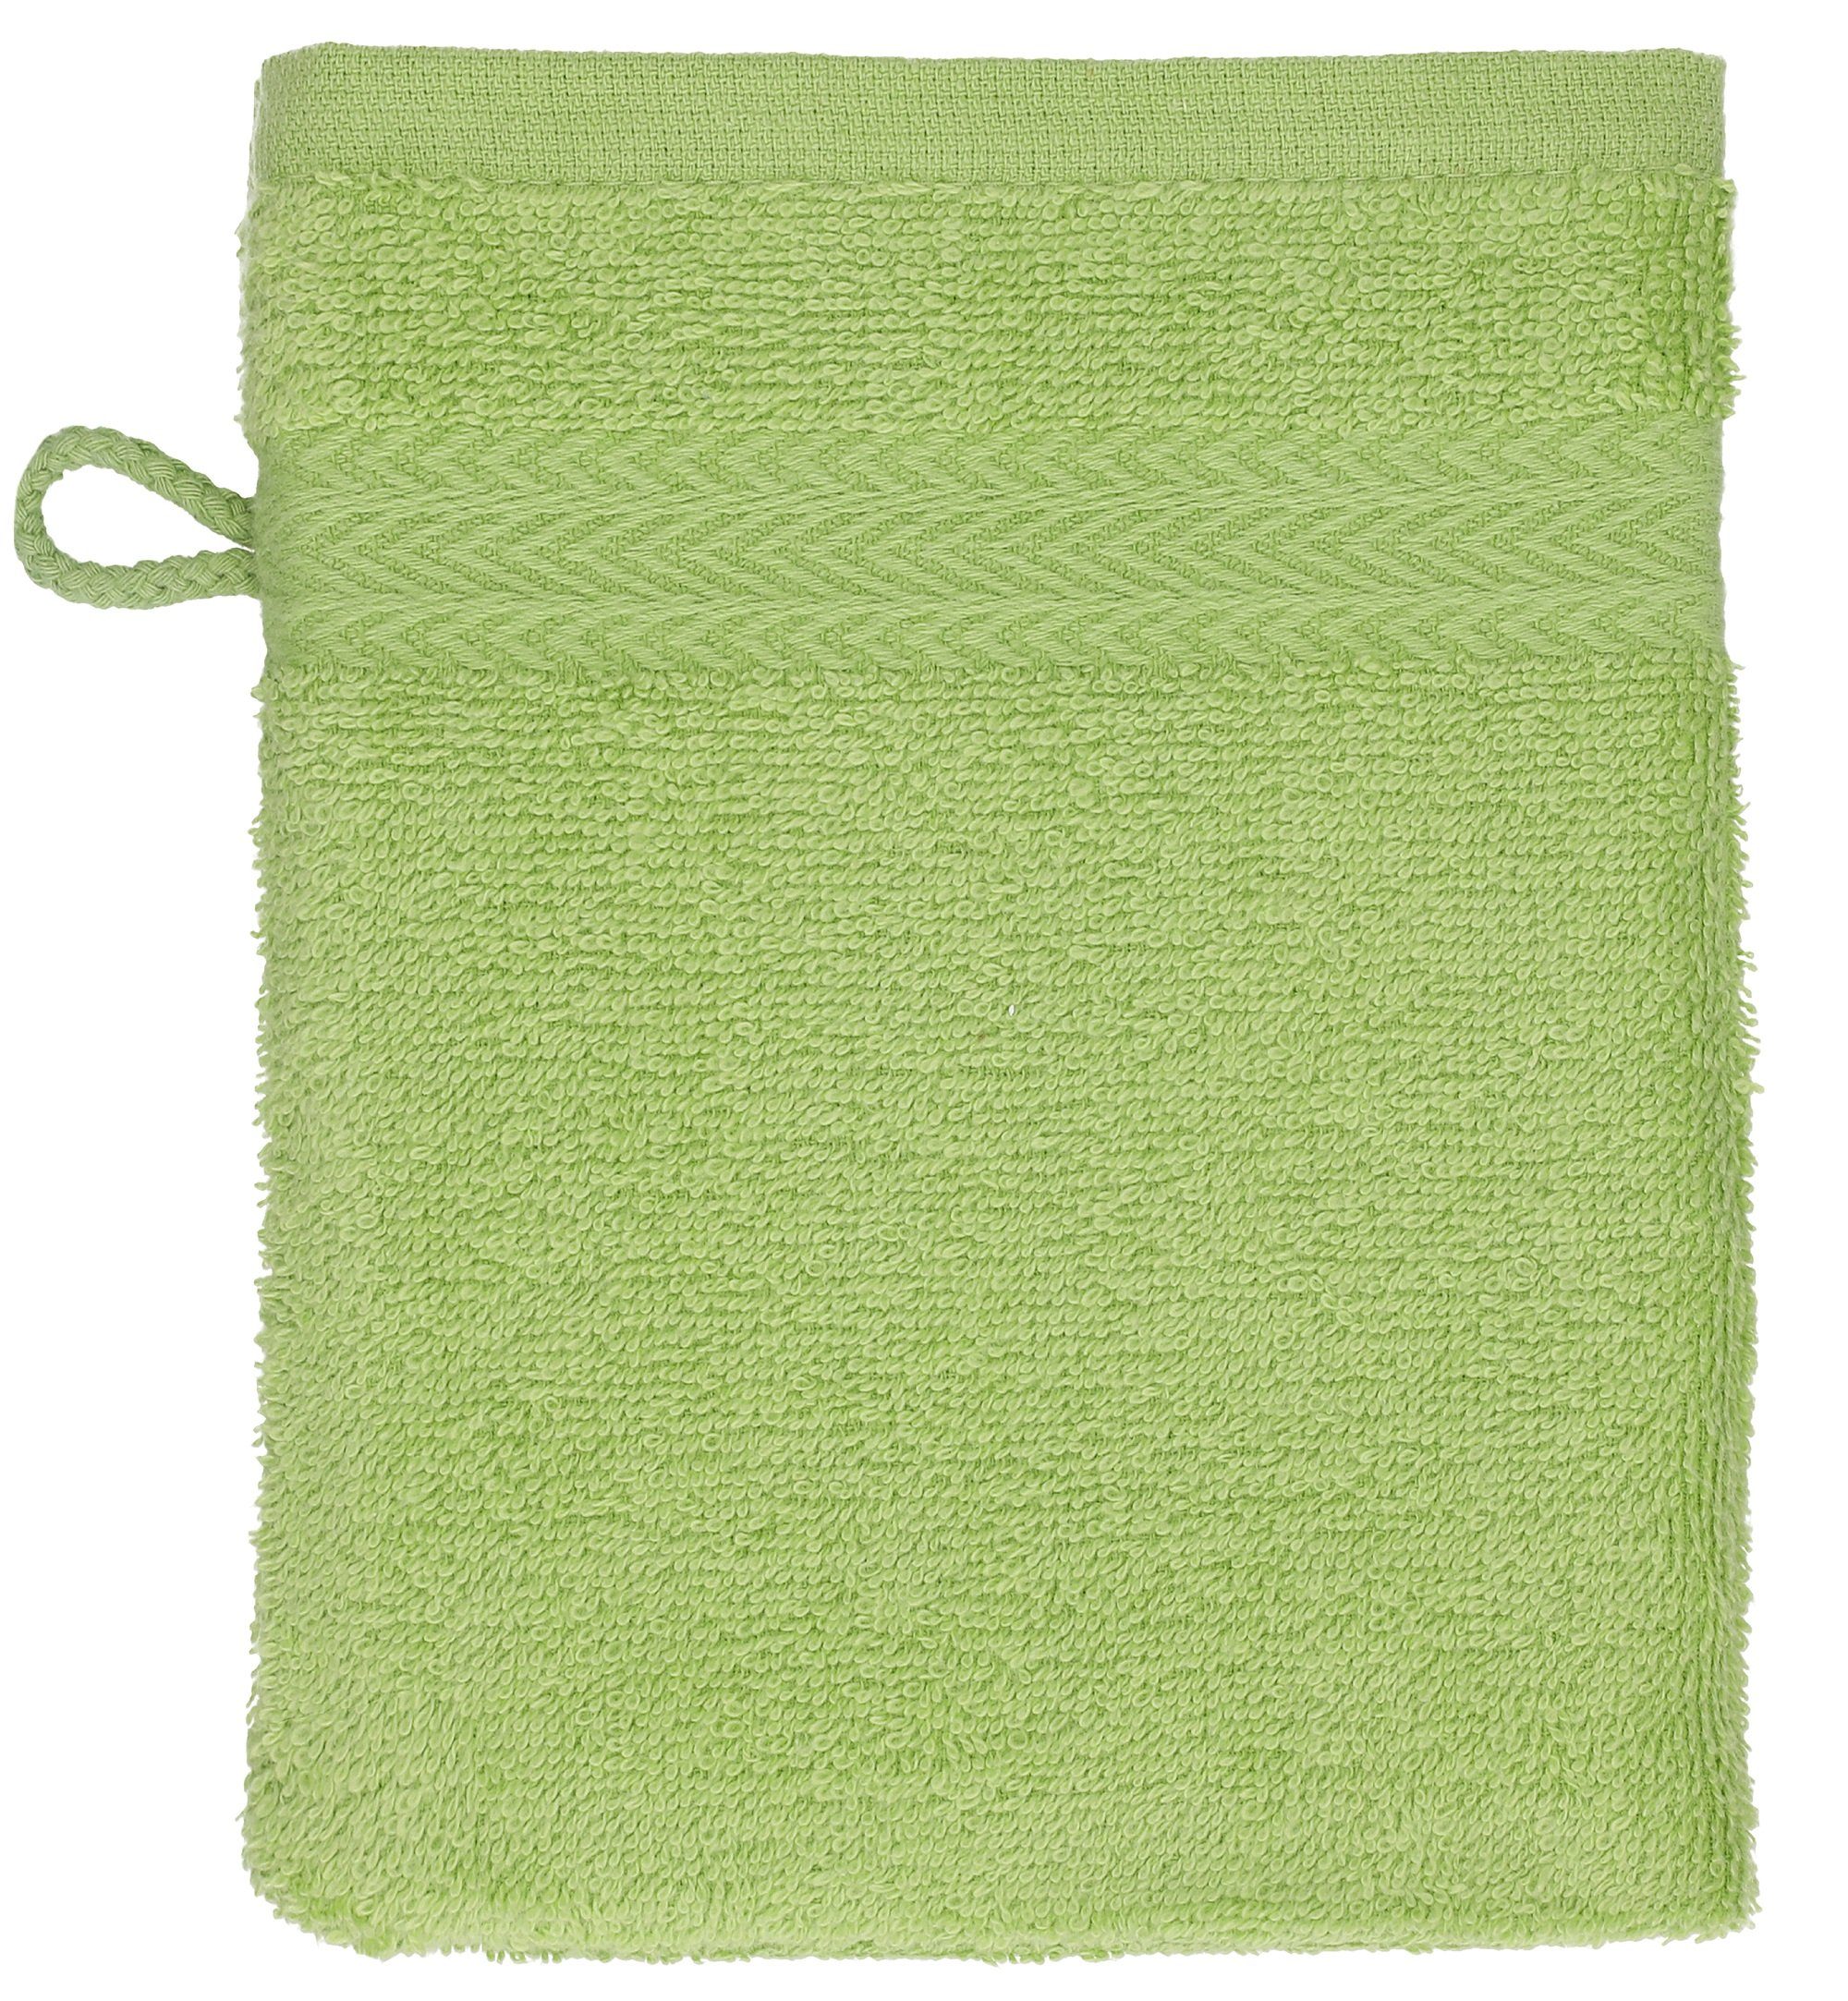 Haushalt Gesundheitsprodukte Betz Waschhandschuh 10 Stück Waschhandschuhe Waschlappen Set Premium 100% Baumwolle 16x21 cm Farbe 